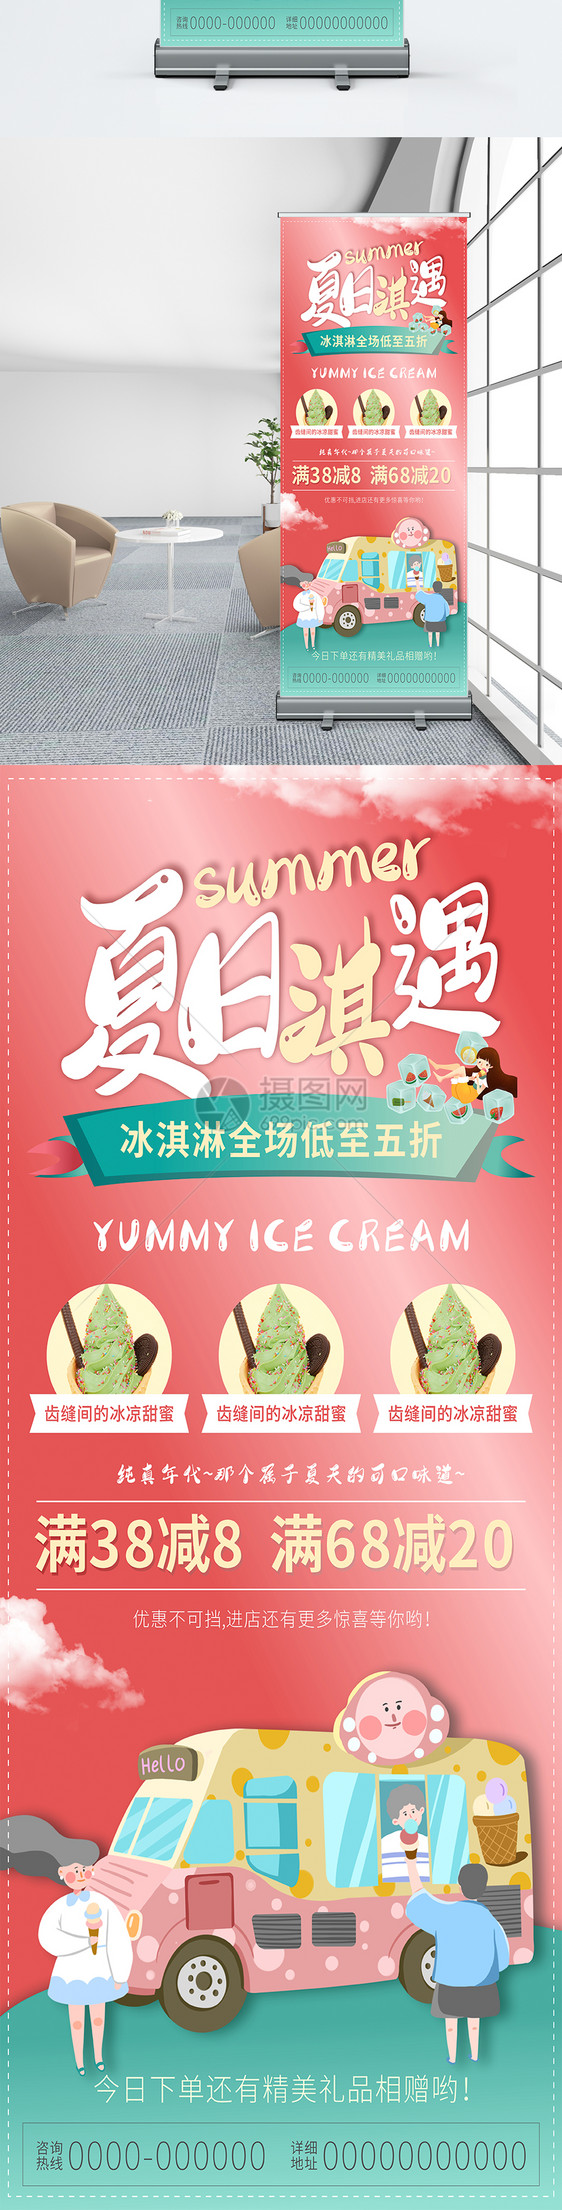 冰淇淋夏日狂欢促销活动简约展架易拉宝画面图片